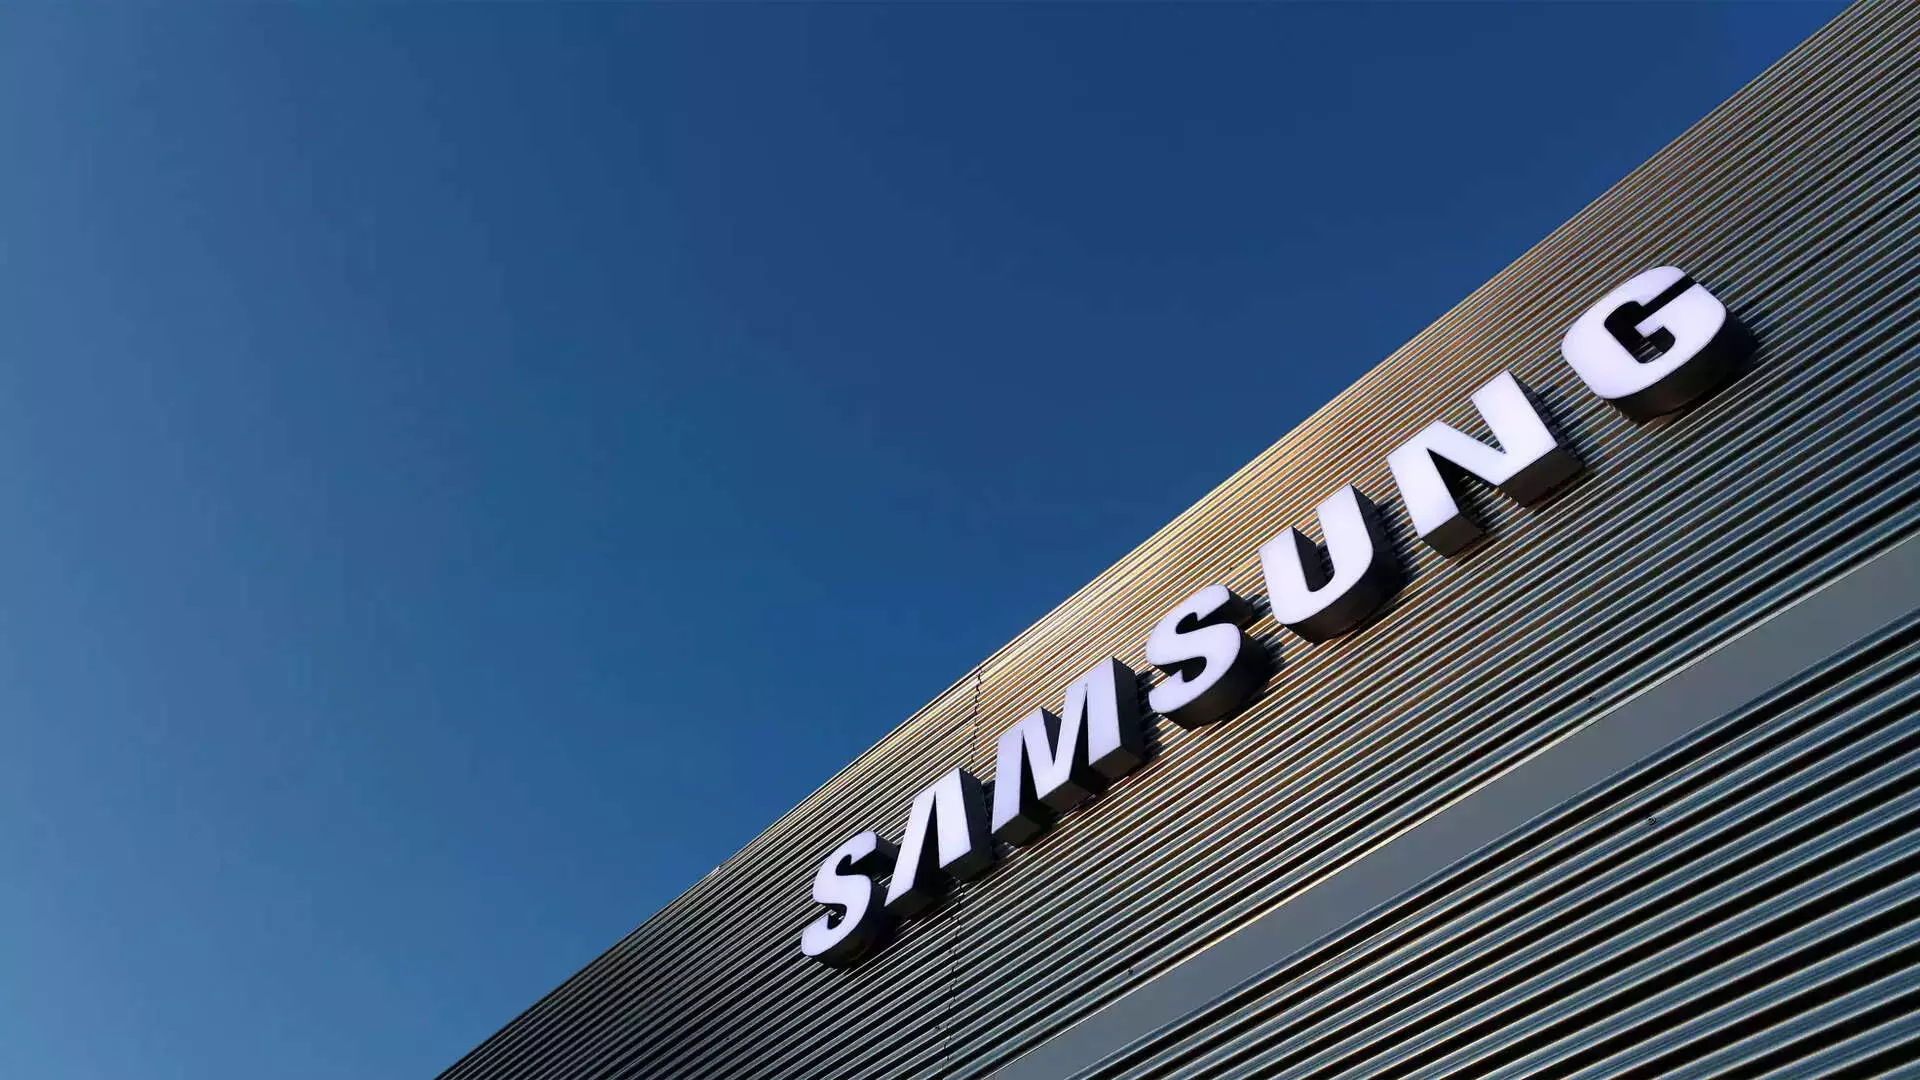 Samsung ने उच्च बैंडविड्थ मेमोरी चिप्स के लिए विकास टीम गठित की